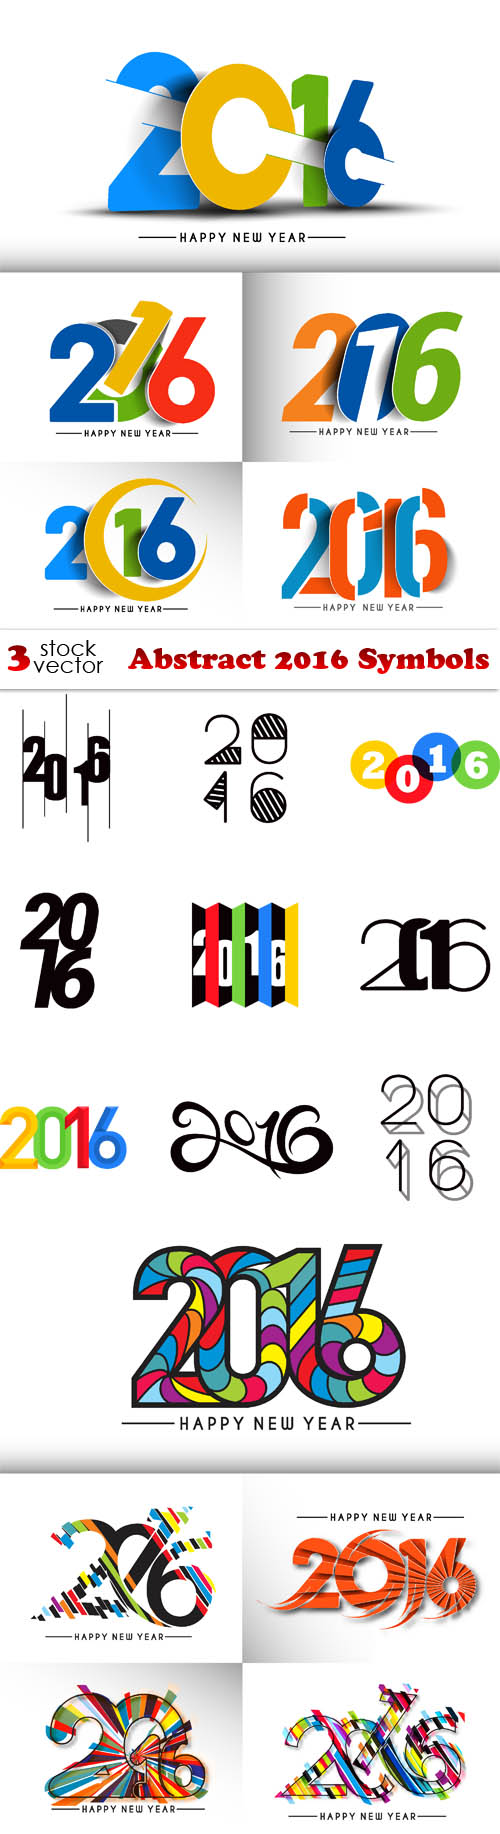 Vectors - Abstract 2016 Symbols